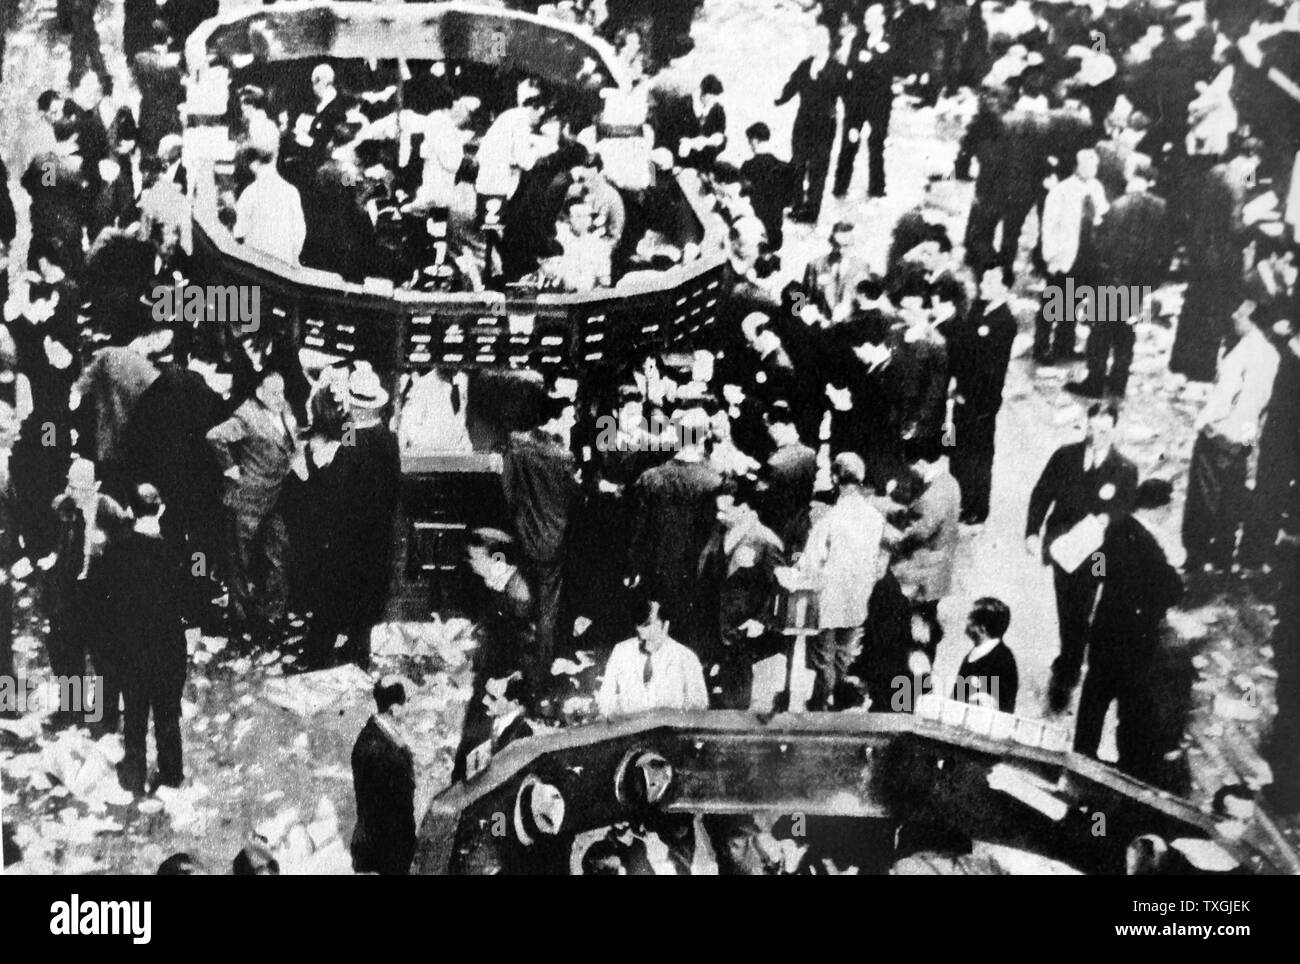 Fotodruck von Massen des Bodens von der Börse an der Wall Street, New York, zu Beginn der Wall Street Crash 1929. Vom 20. Jahrhundert Stockfoto